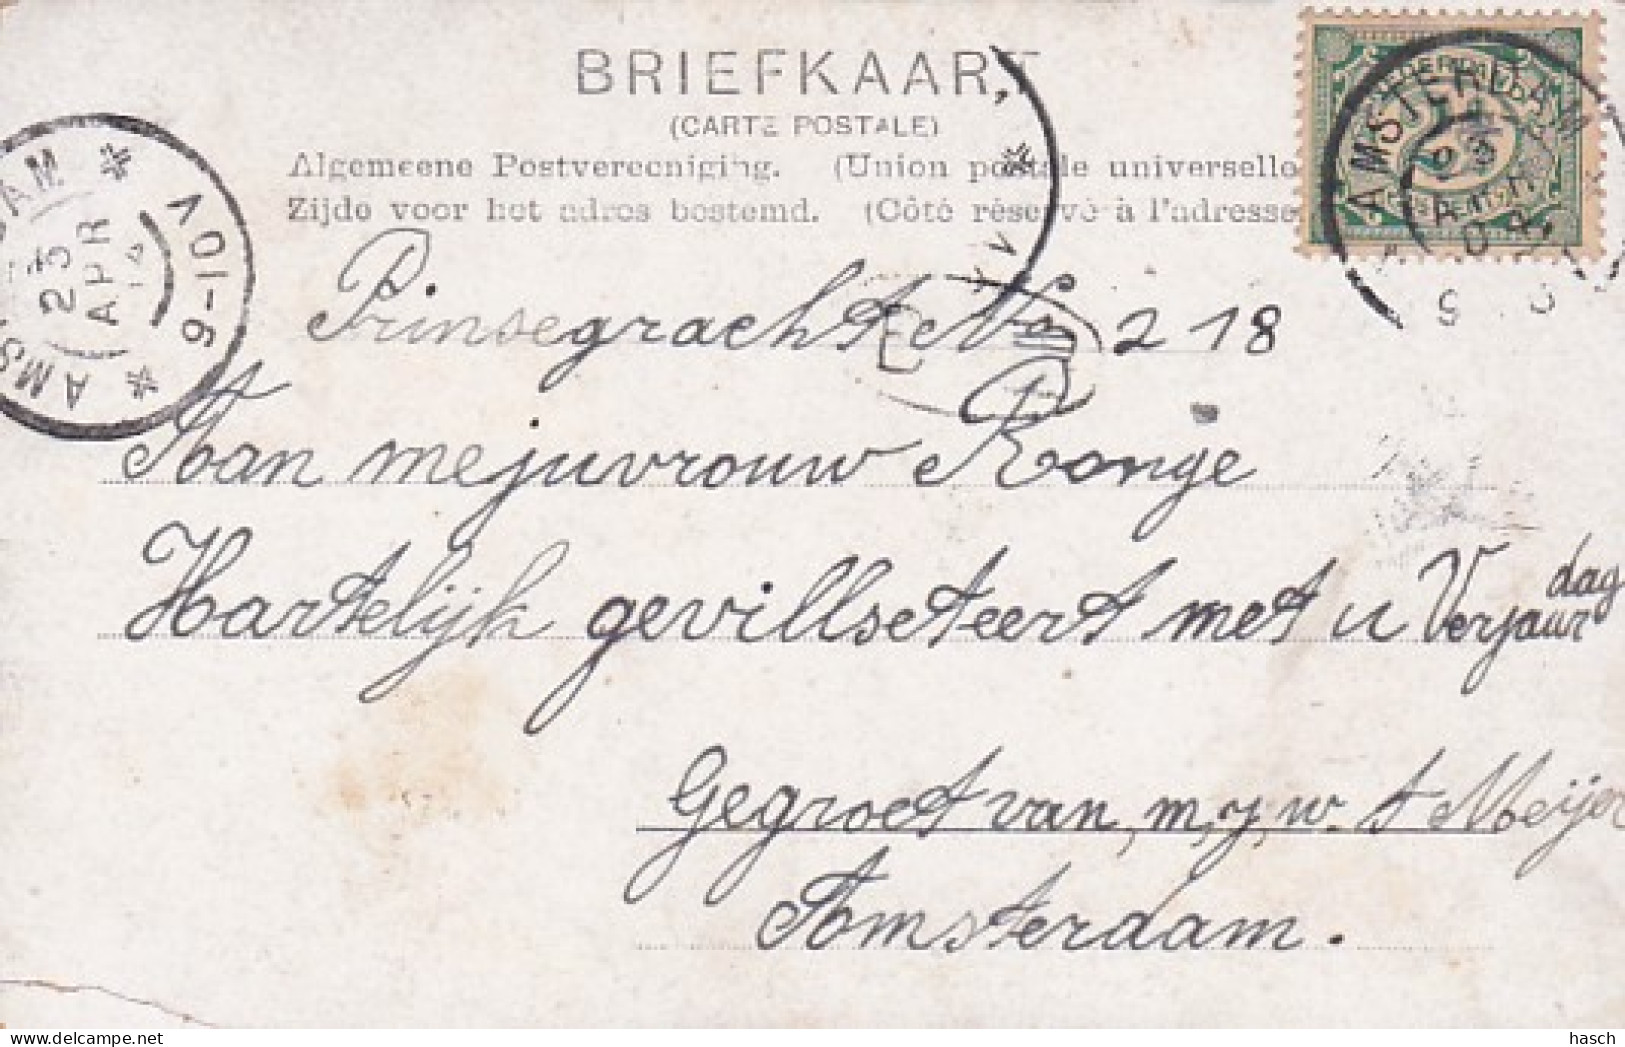 4819117Amsterdam, Jooden Breestraat 1904. (linksonder Een Klein Vouwtje) - Amsterdam